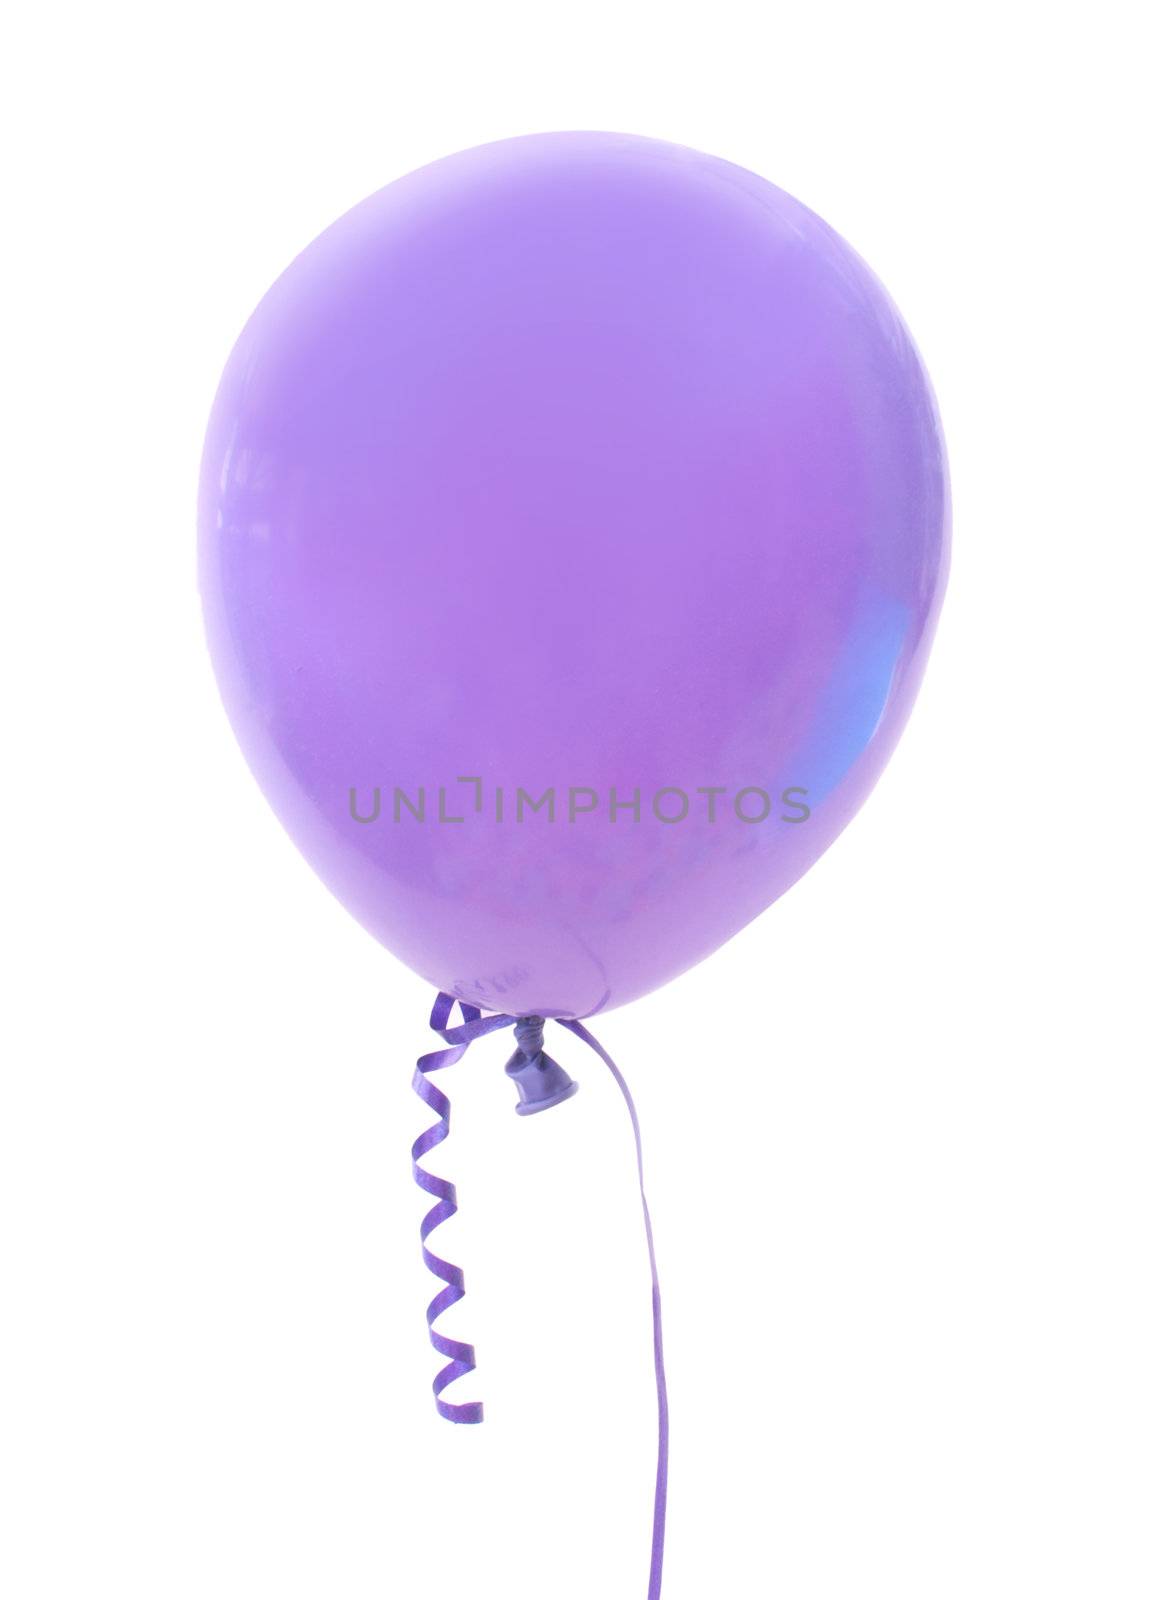 Balloon  by unikpix